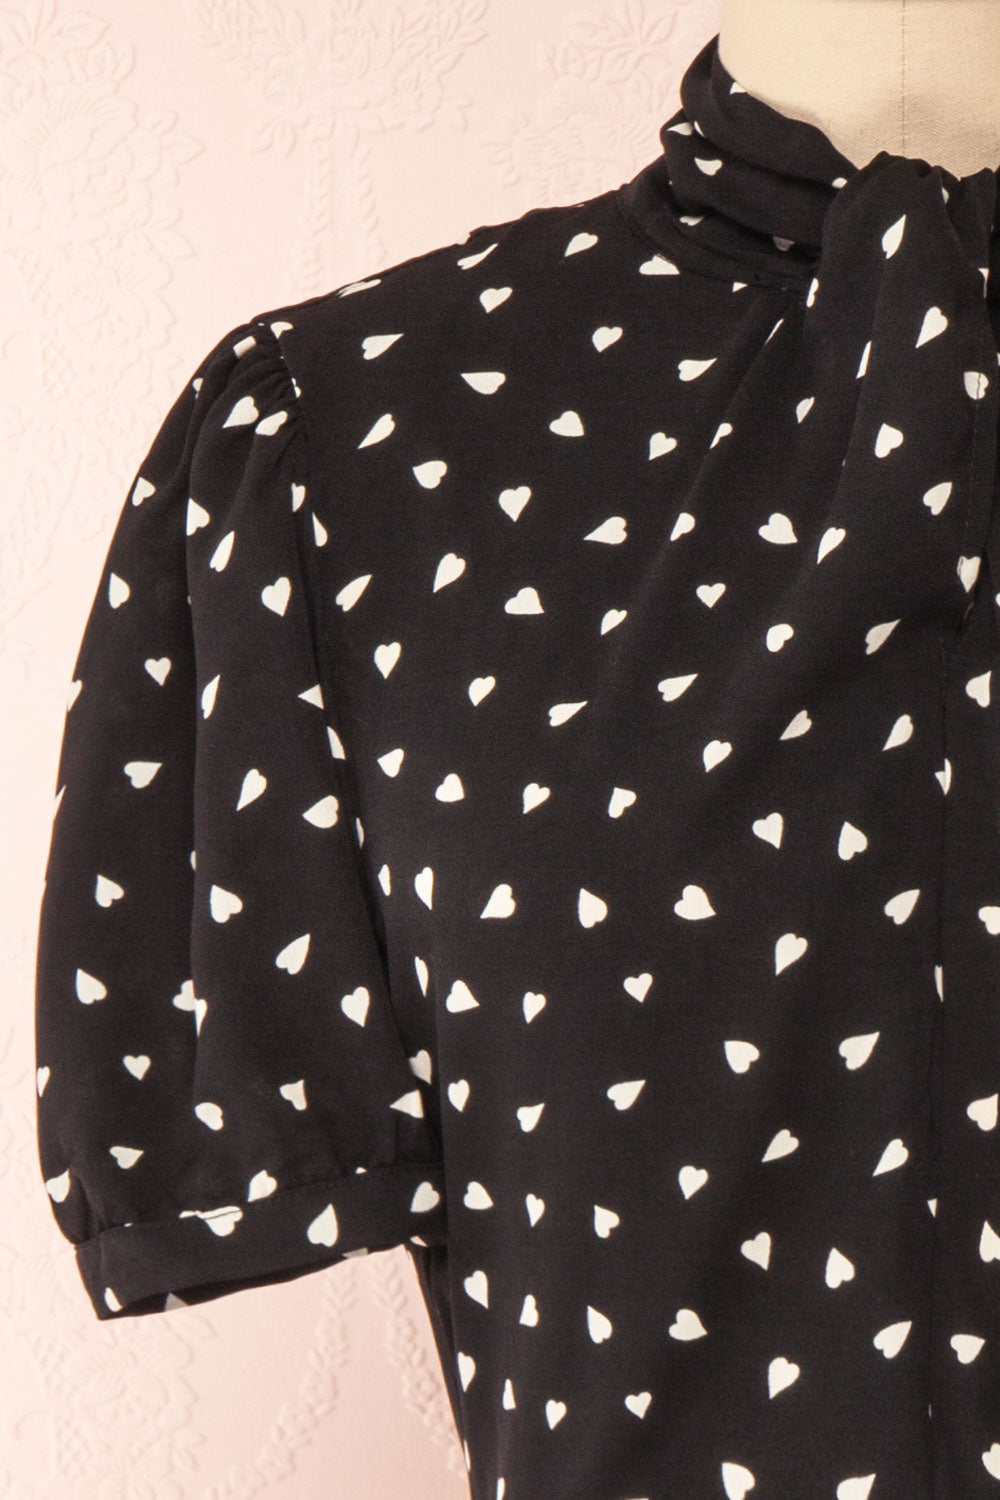 Arlette Black Patterned Short Sleeve Dress | Boutique 1861 front close-up